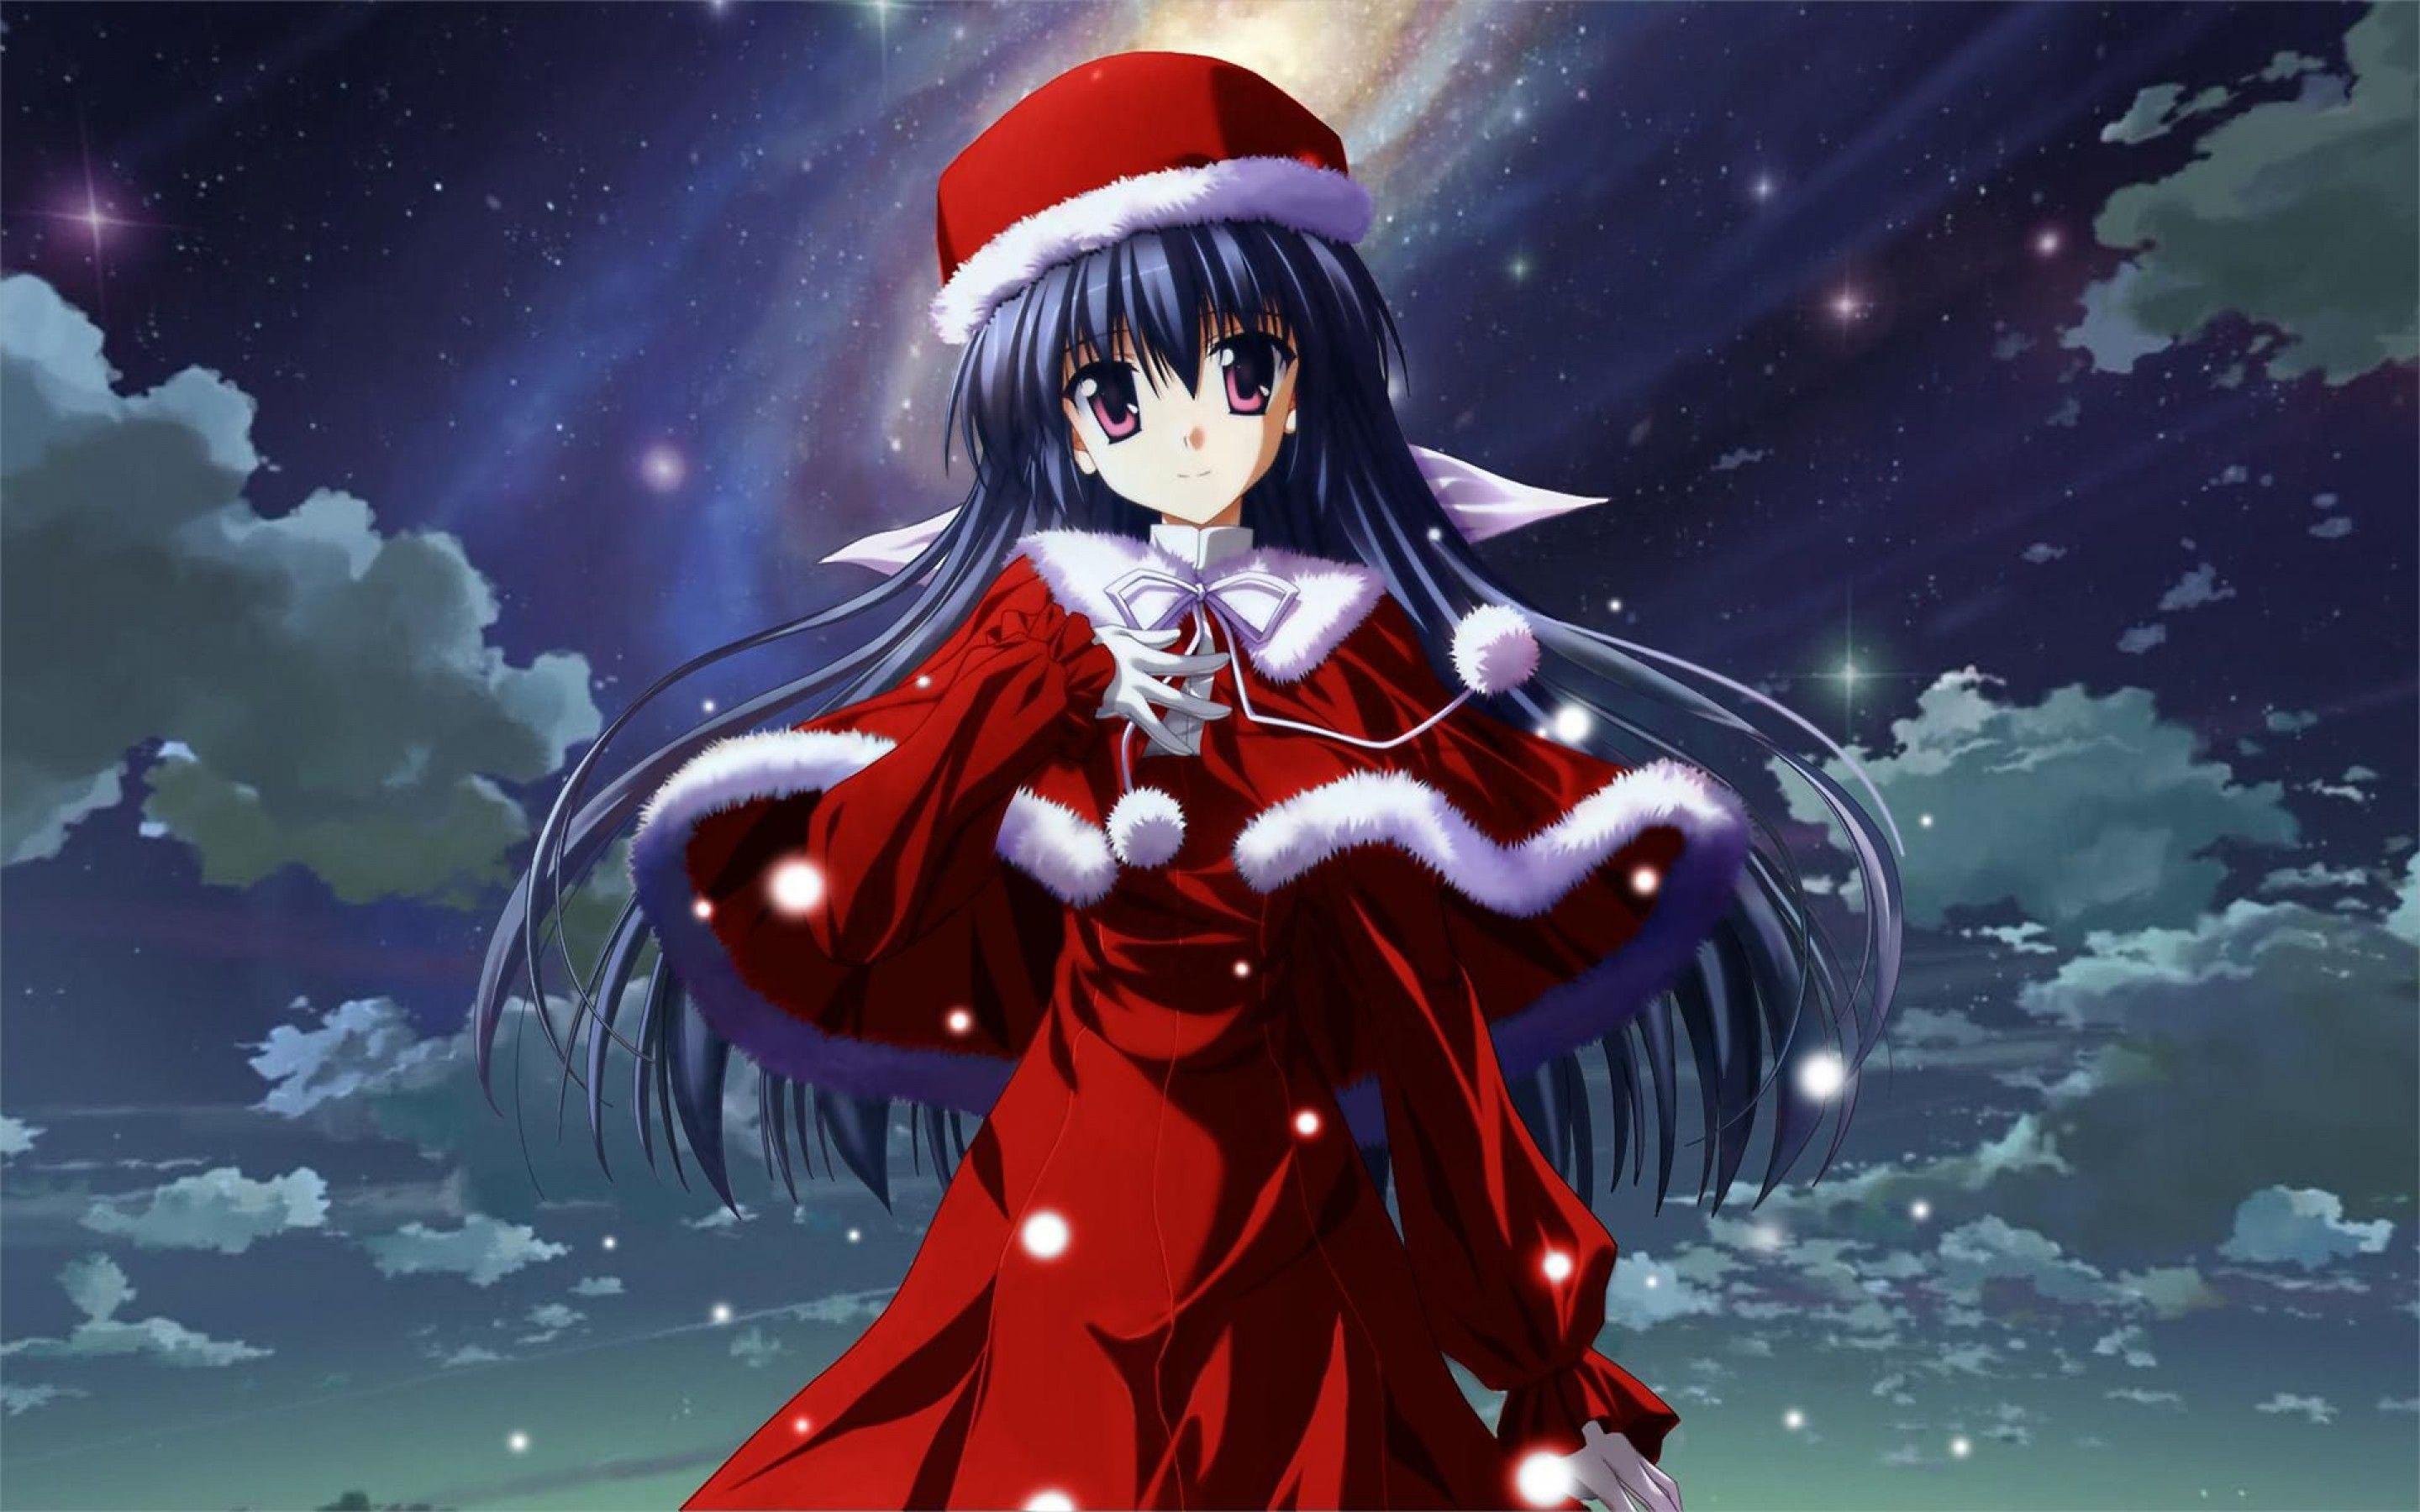 Anime Christmas Girl iPhone Wallpaper | ID: 38890